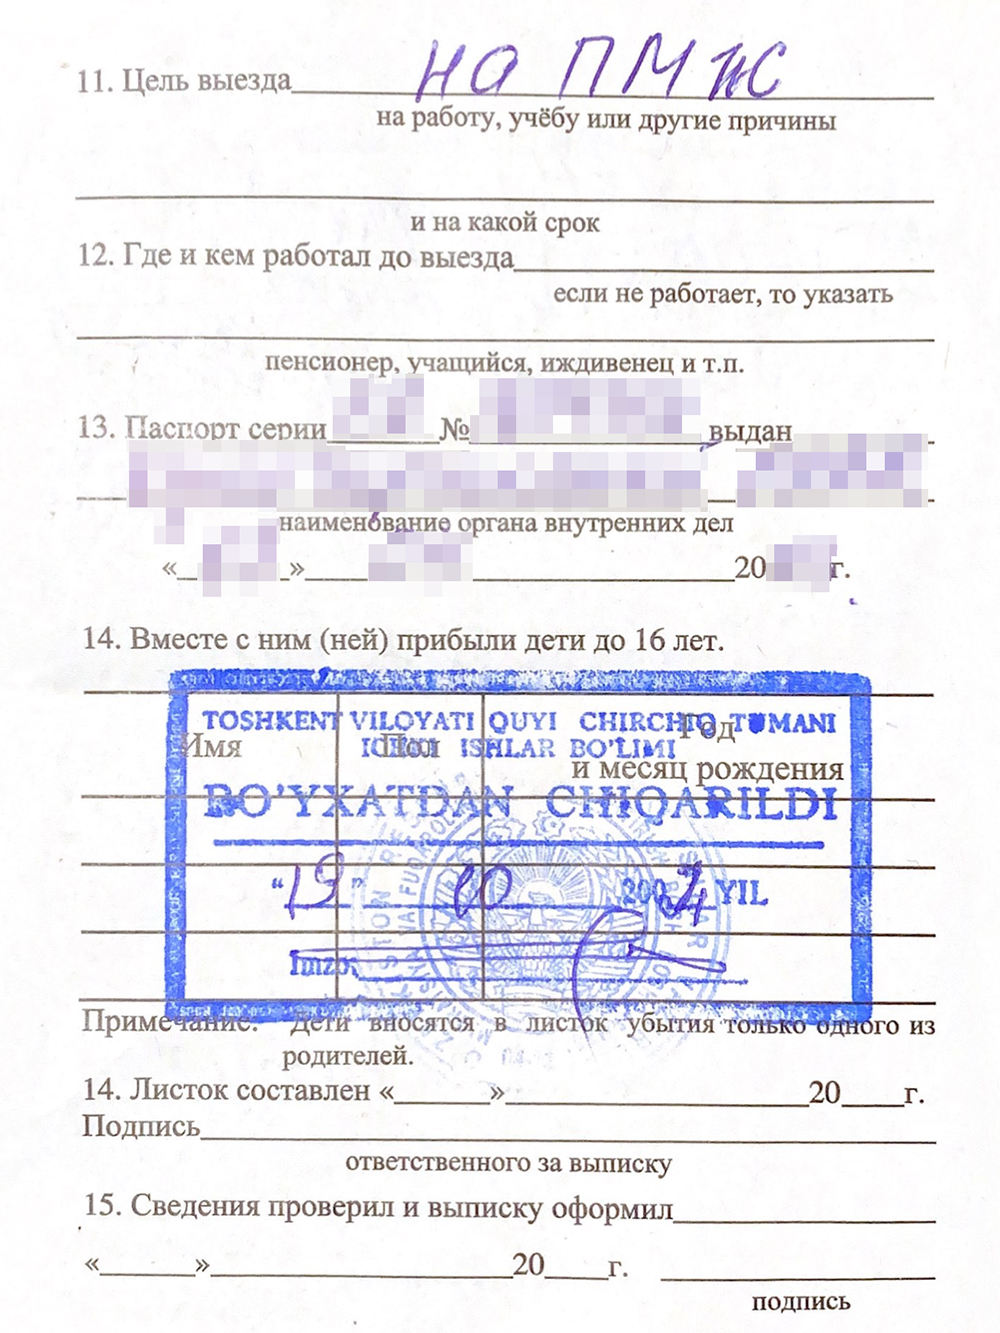 Еще в листке убытия прописывают паспортные данные узбекского документа и цель визита. В моем случае была цель «На ПМЖ»